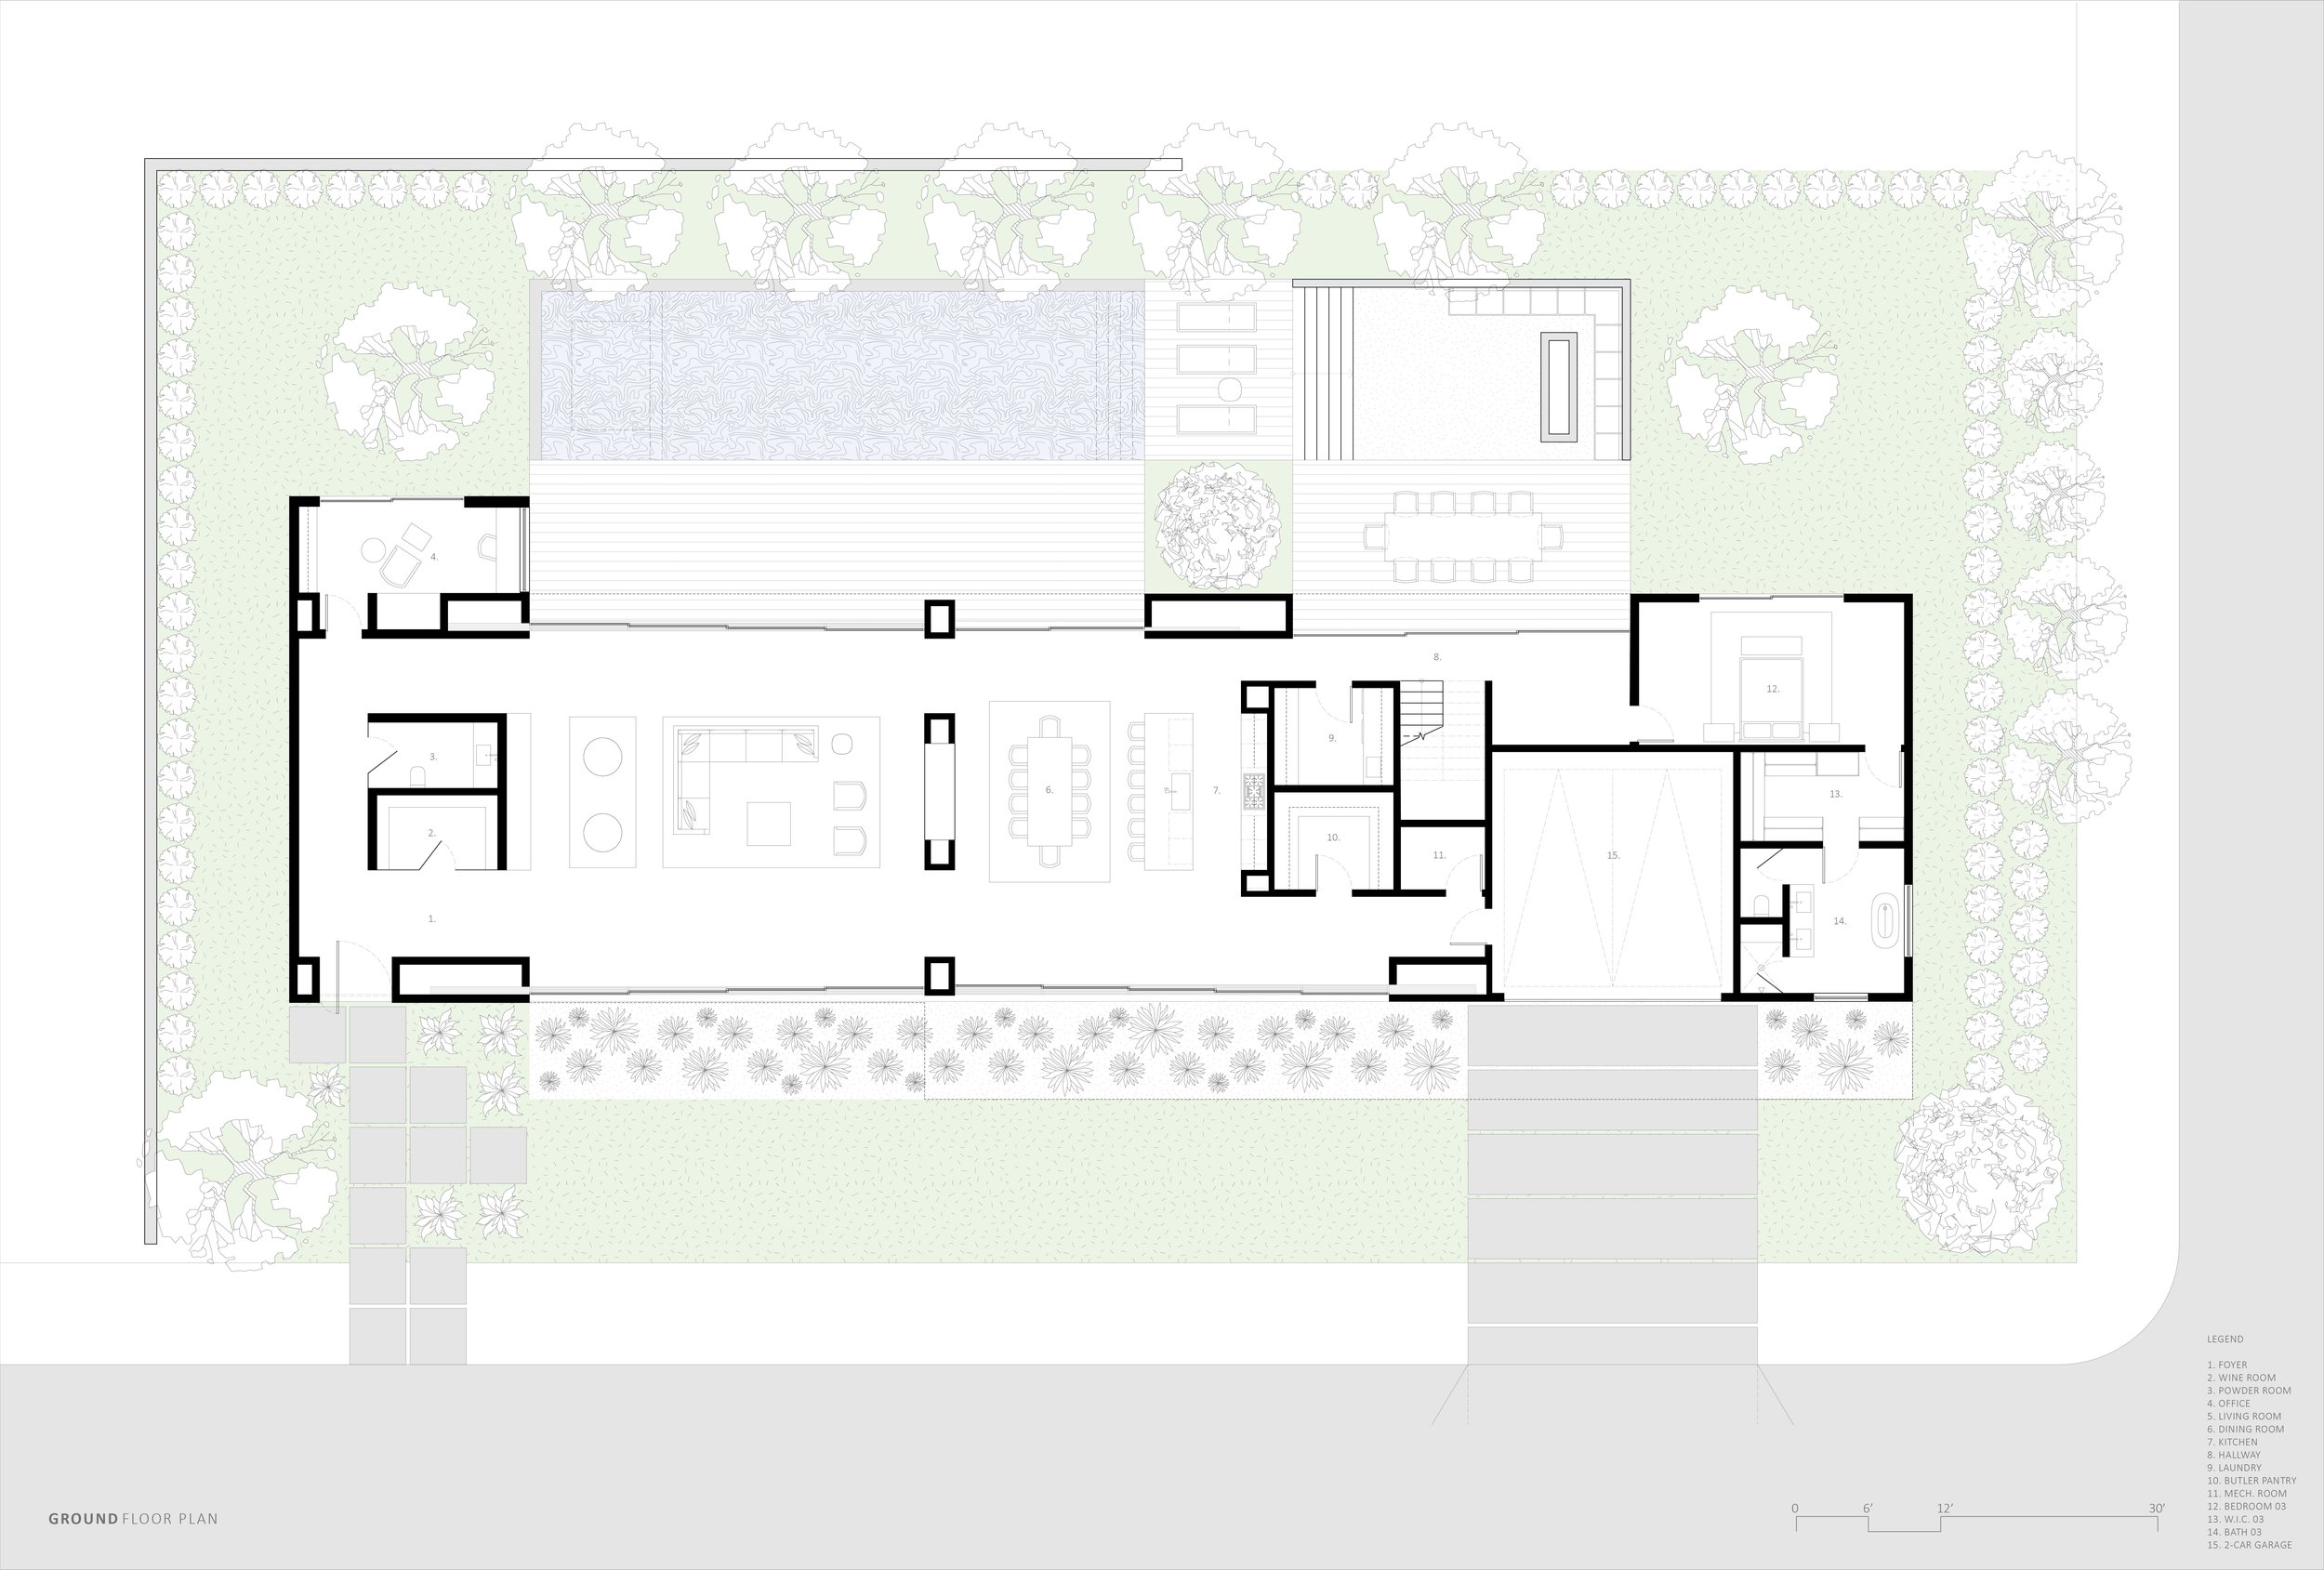 bspk-design-architecture-california-7800-residenital-block-house-ground floor plan.jpg